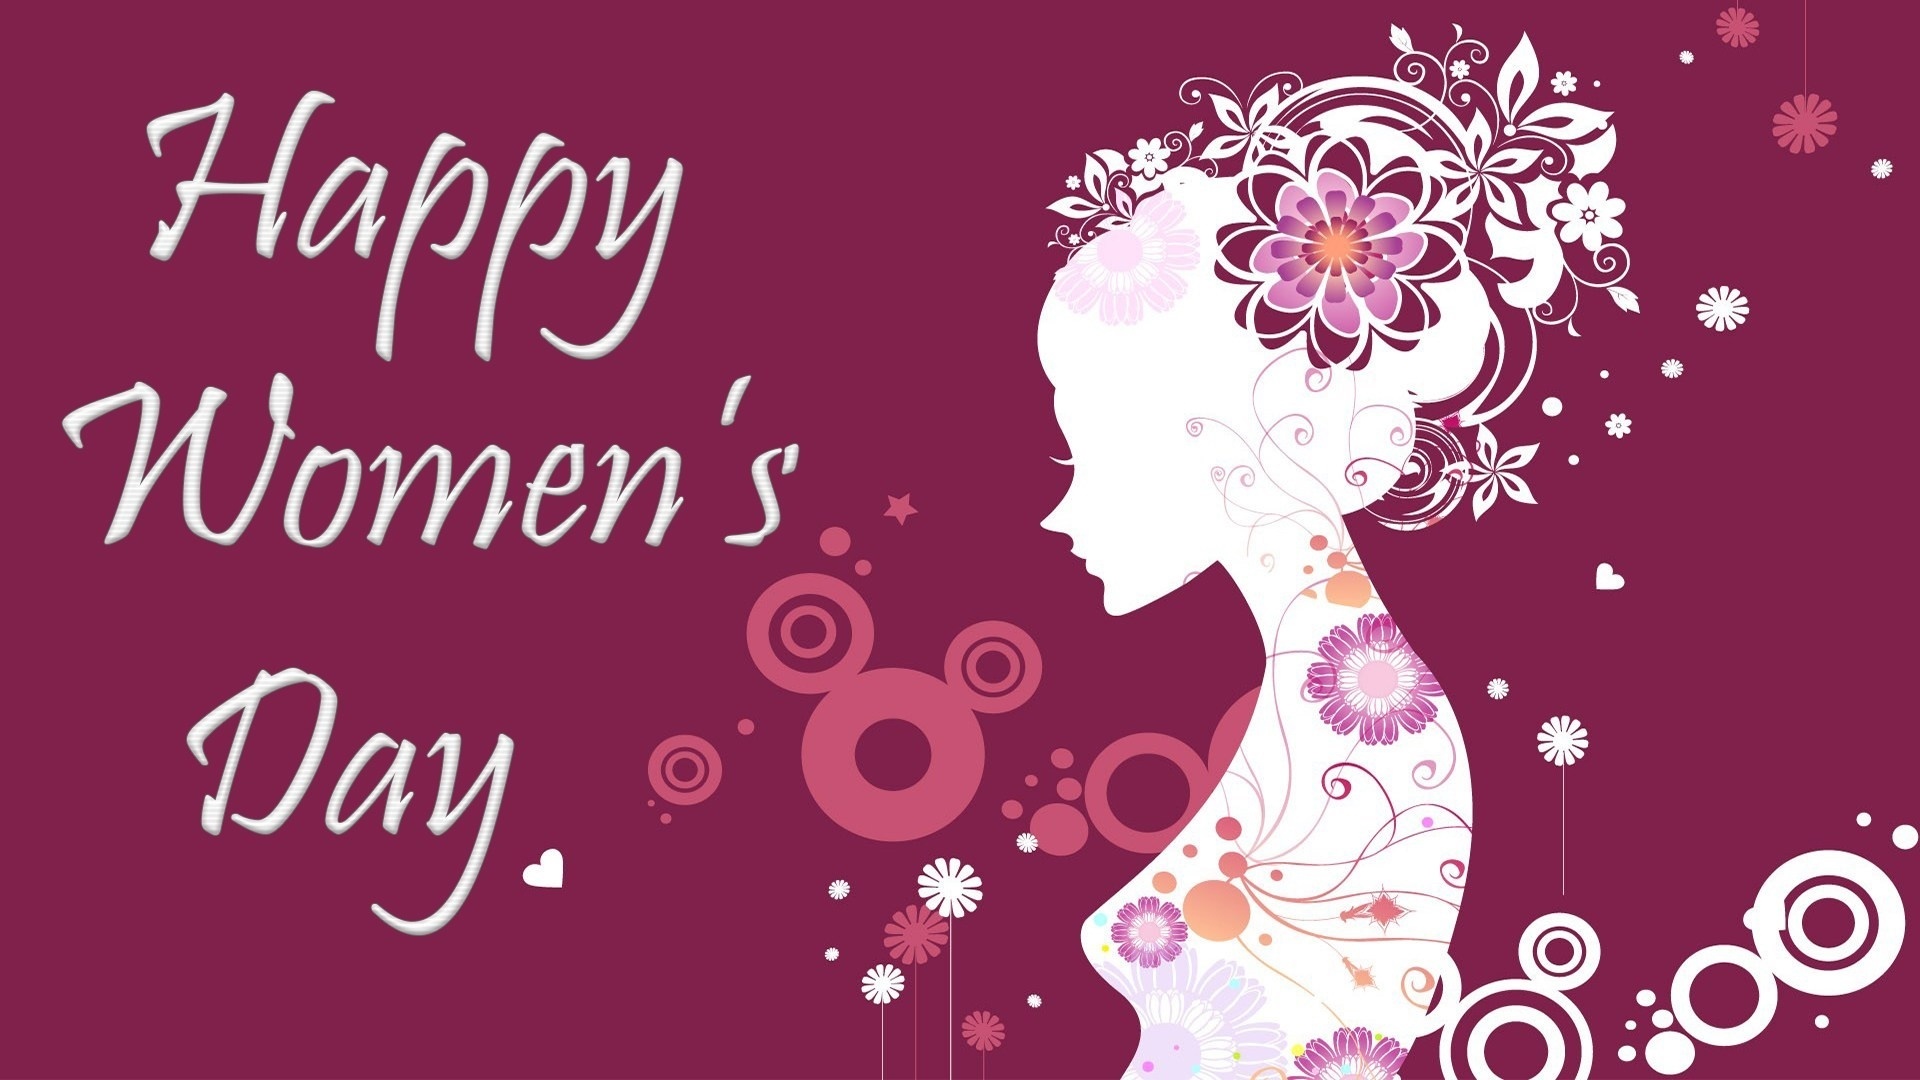 Happy Women's Day desktop wallpaper hd